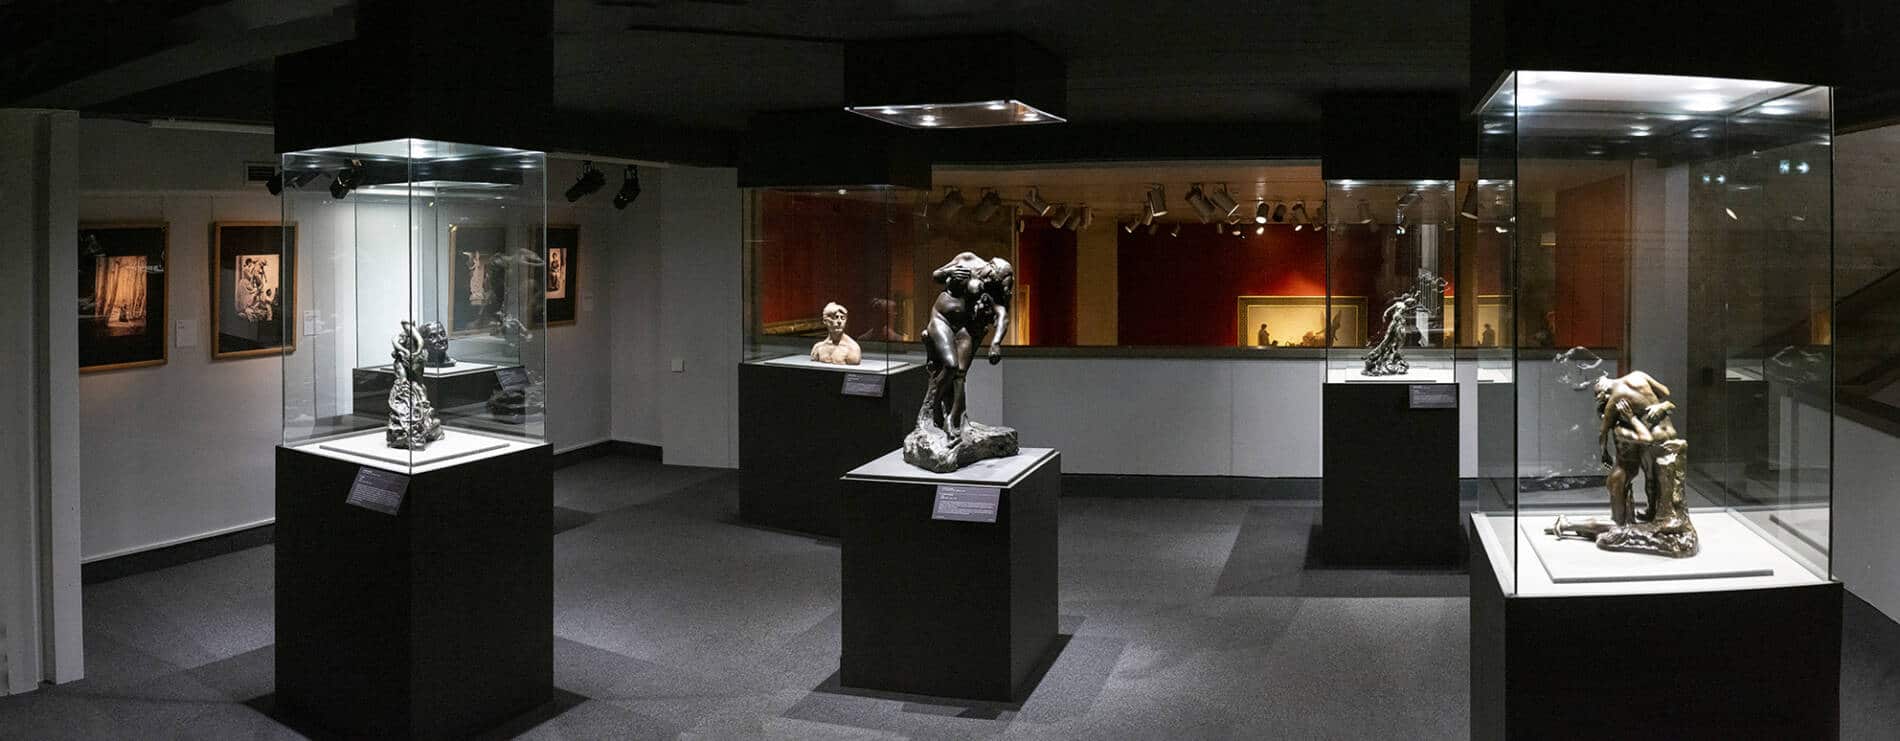 MUSEO DE LAS TRADICIONES POPULARES POITIERS FRANCIA